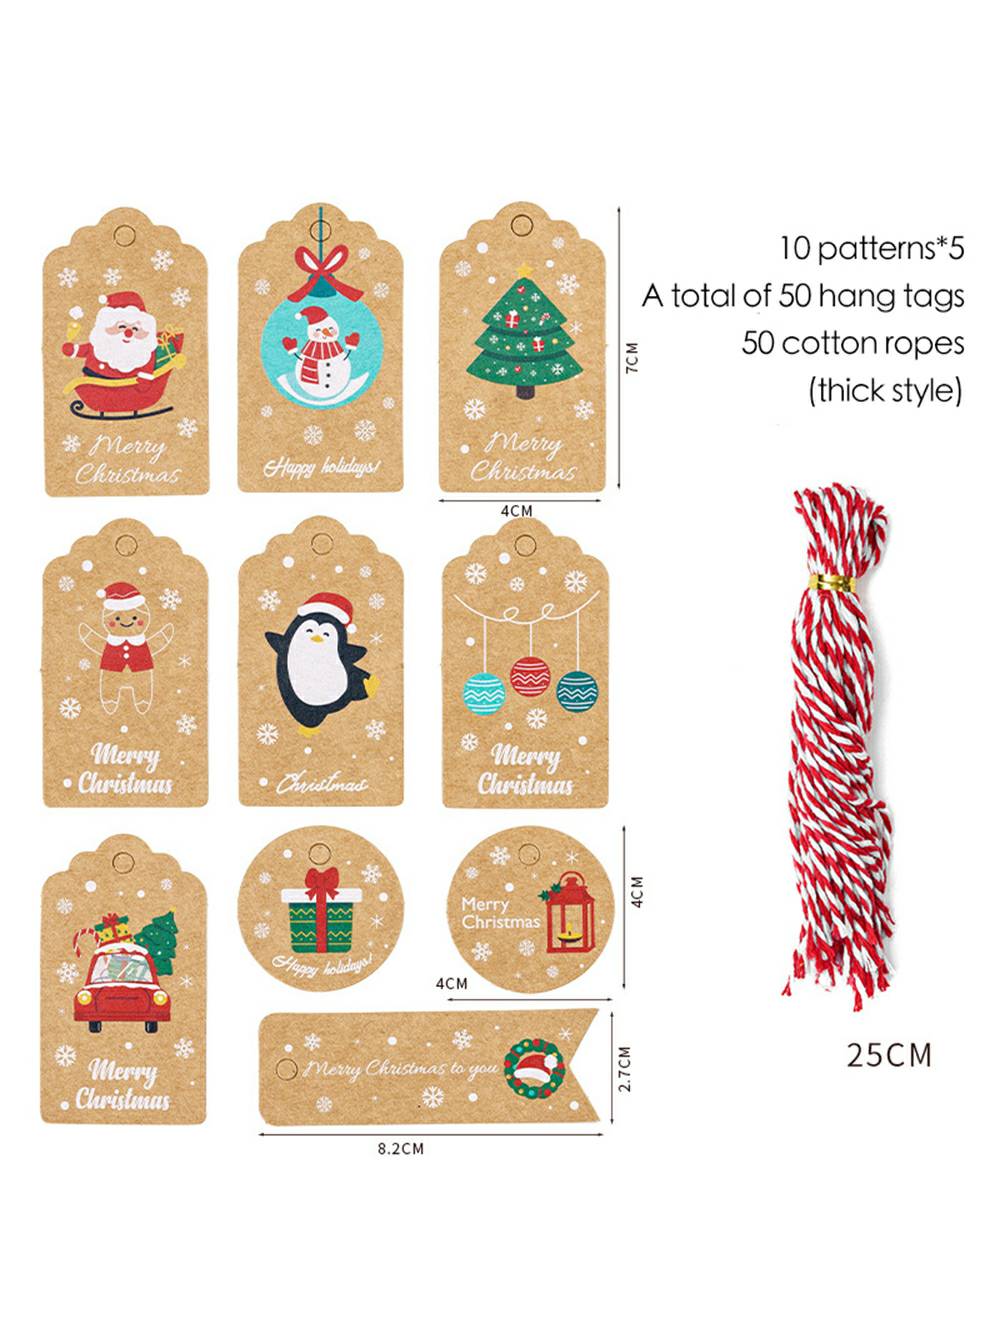 Etichette per decorazioni natalizie - Carta regali per le feste